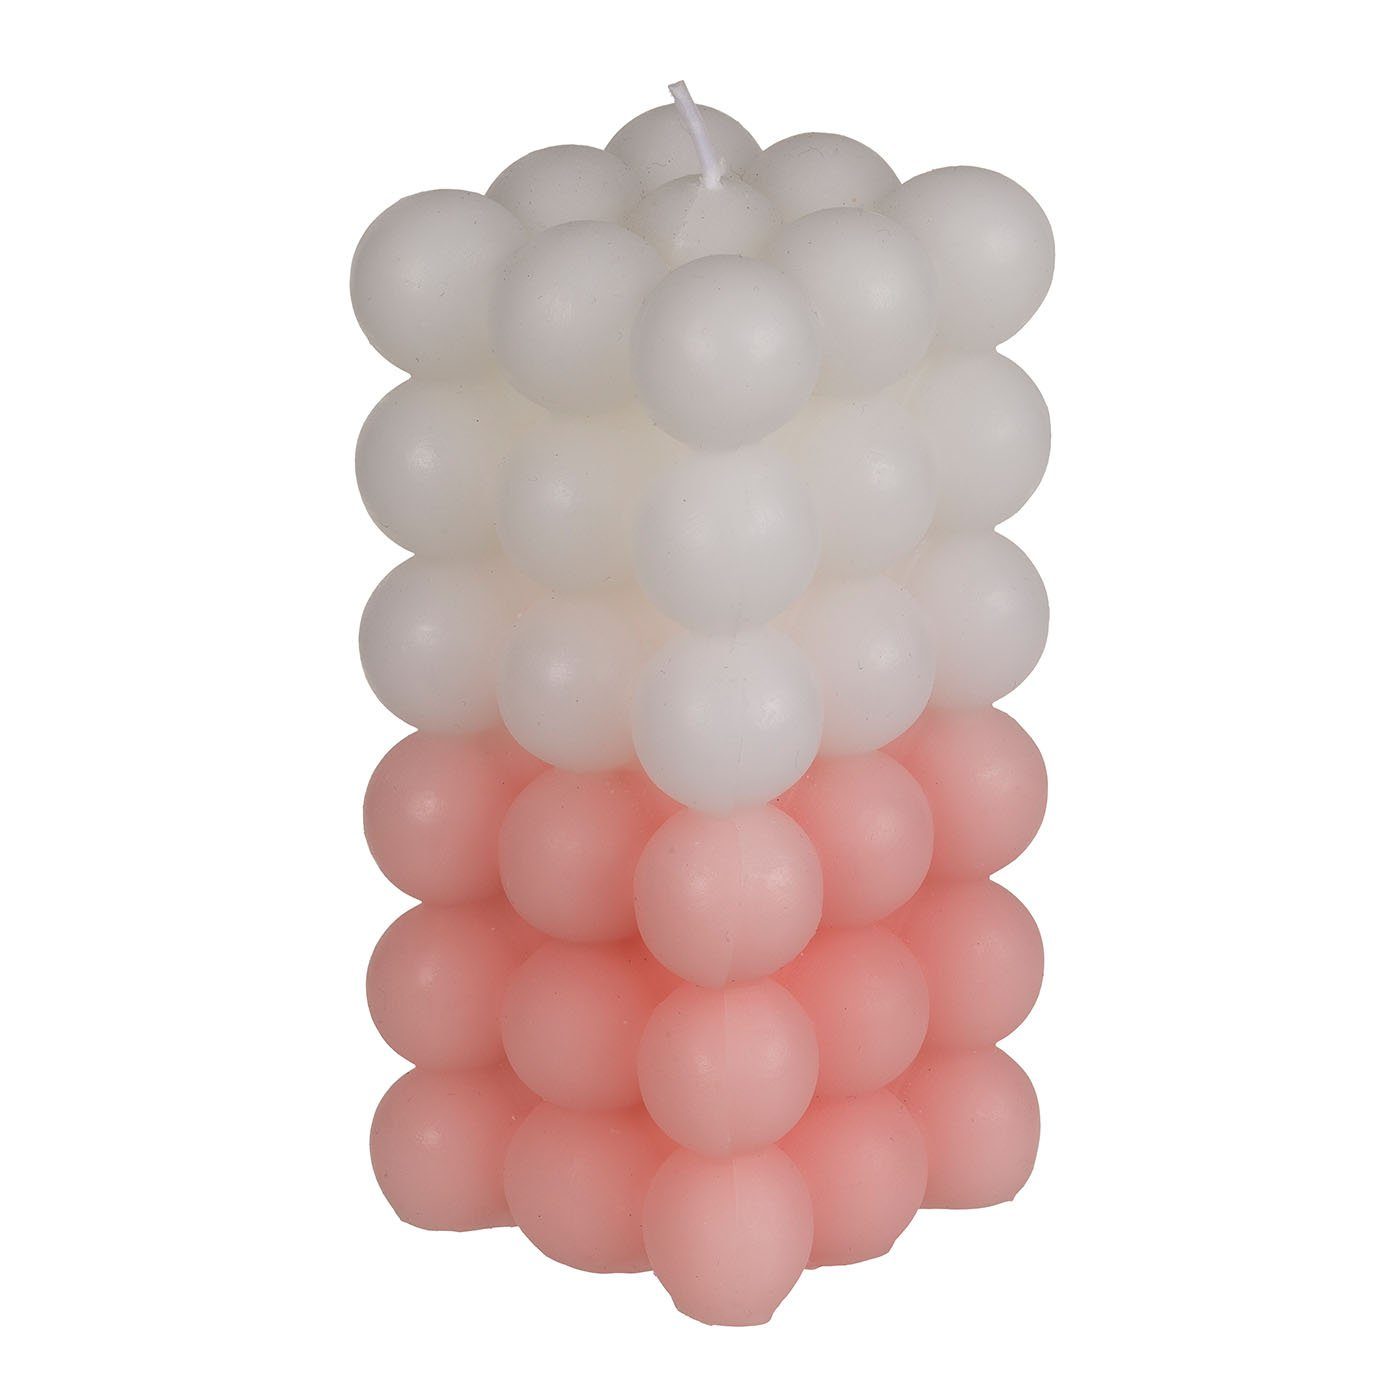 ReWu Formkerze Kerze, Colorful Bubble, ca 6x12cm, 3-farbig sortiert Rosa/weiß